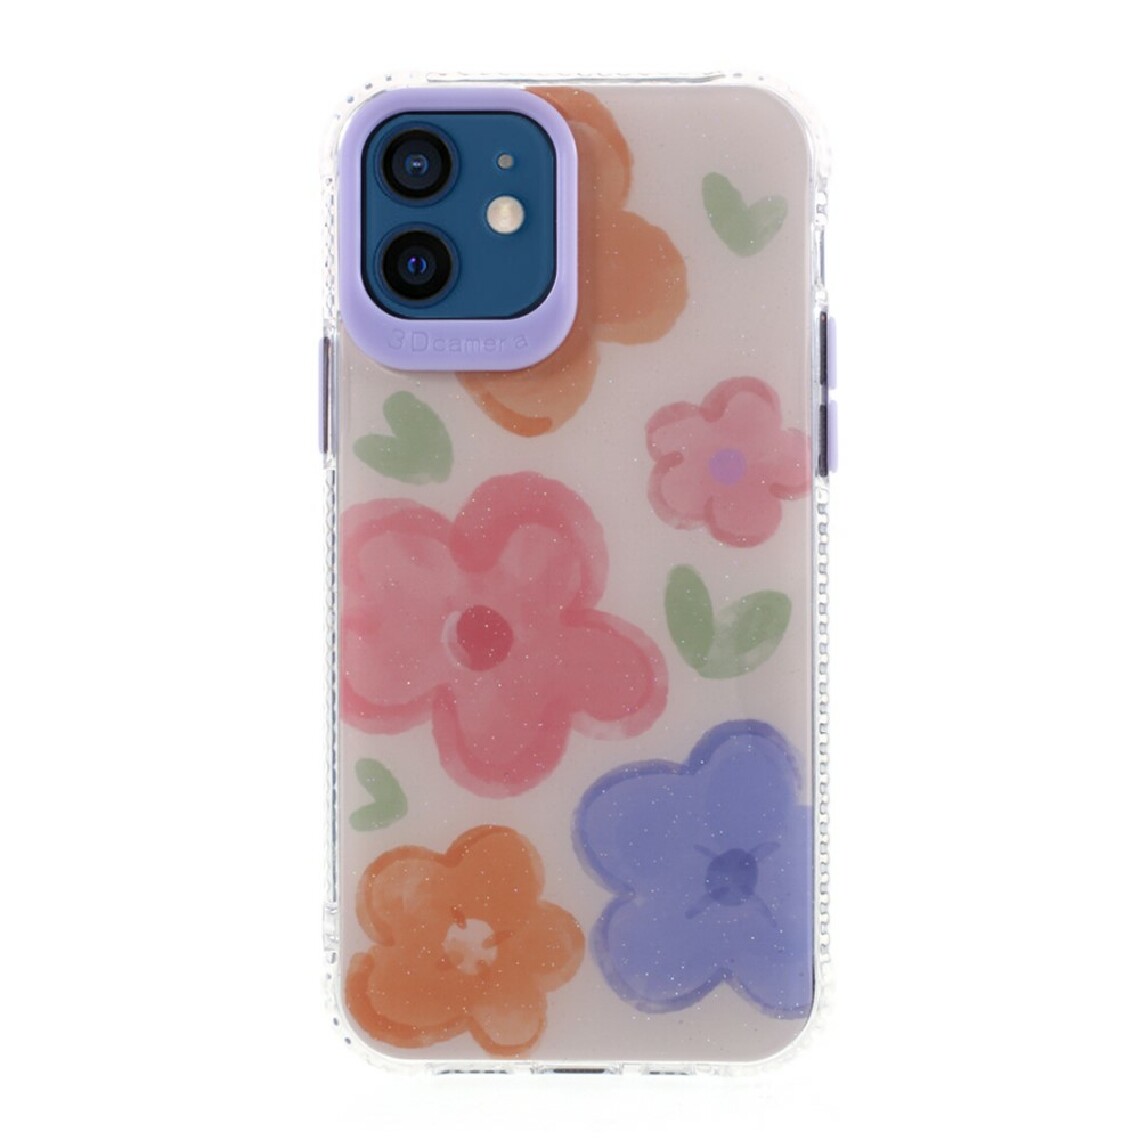 Other - Coque en TPU + acrylique hybride avec impression de motifs de fleurs style E pour votre Apple iPhone 12 mini - Coque, étui smartphone